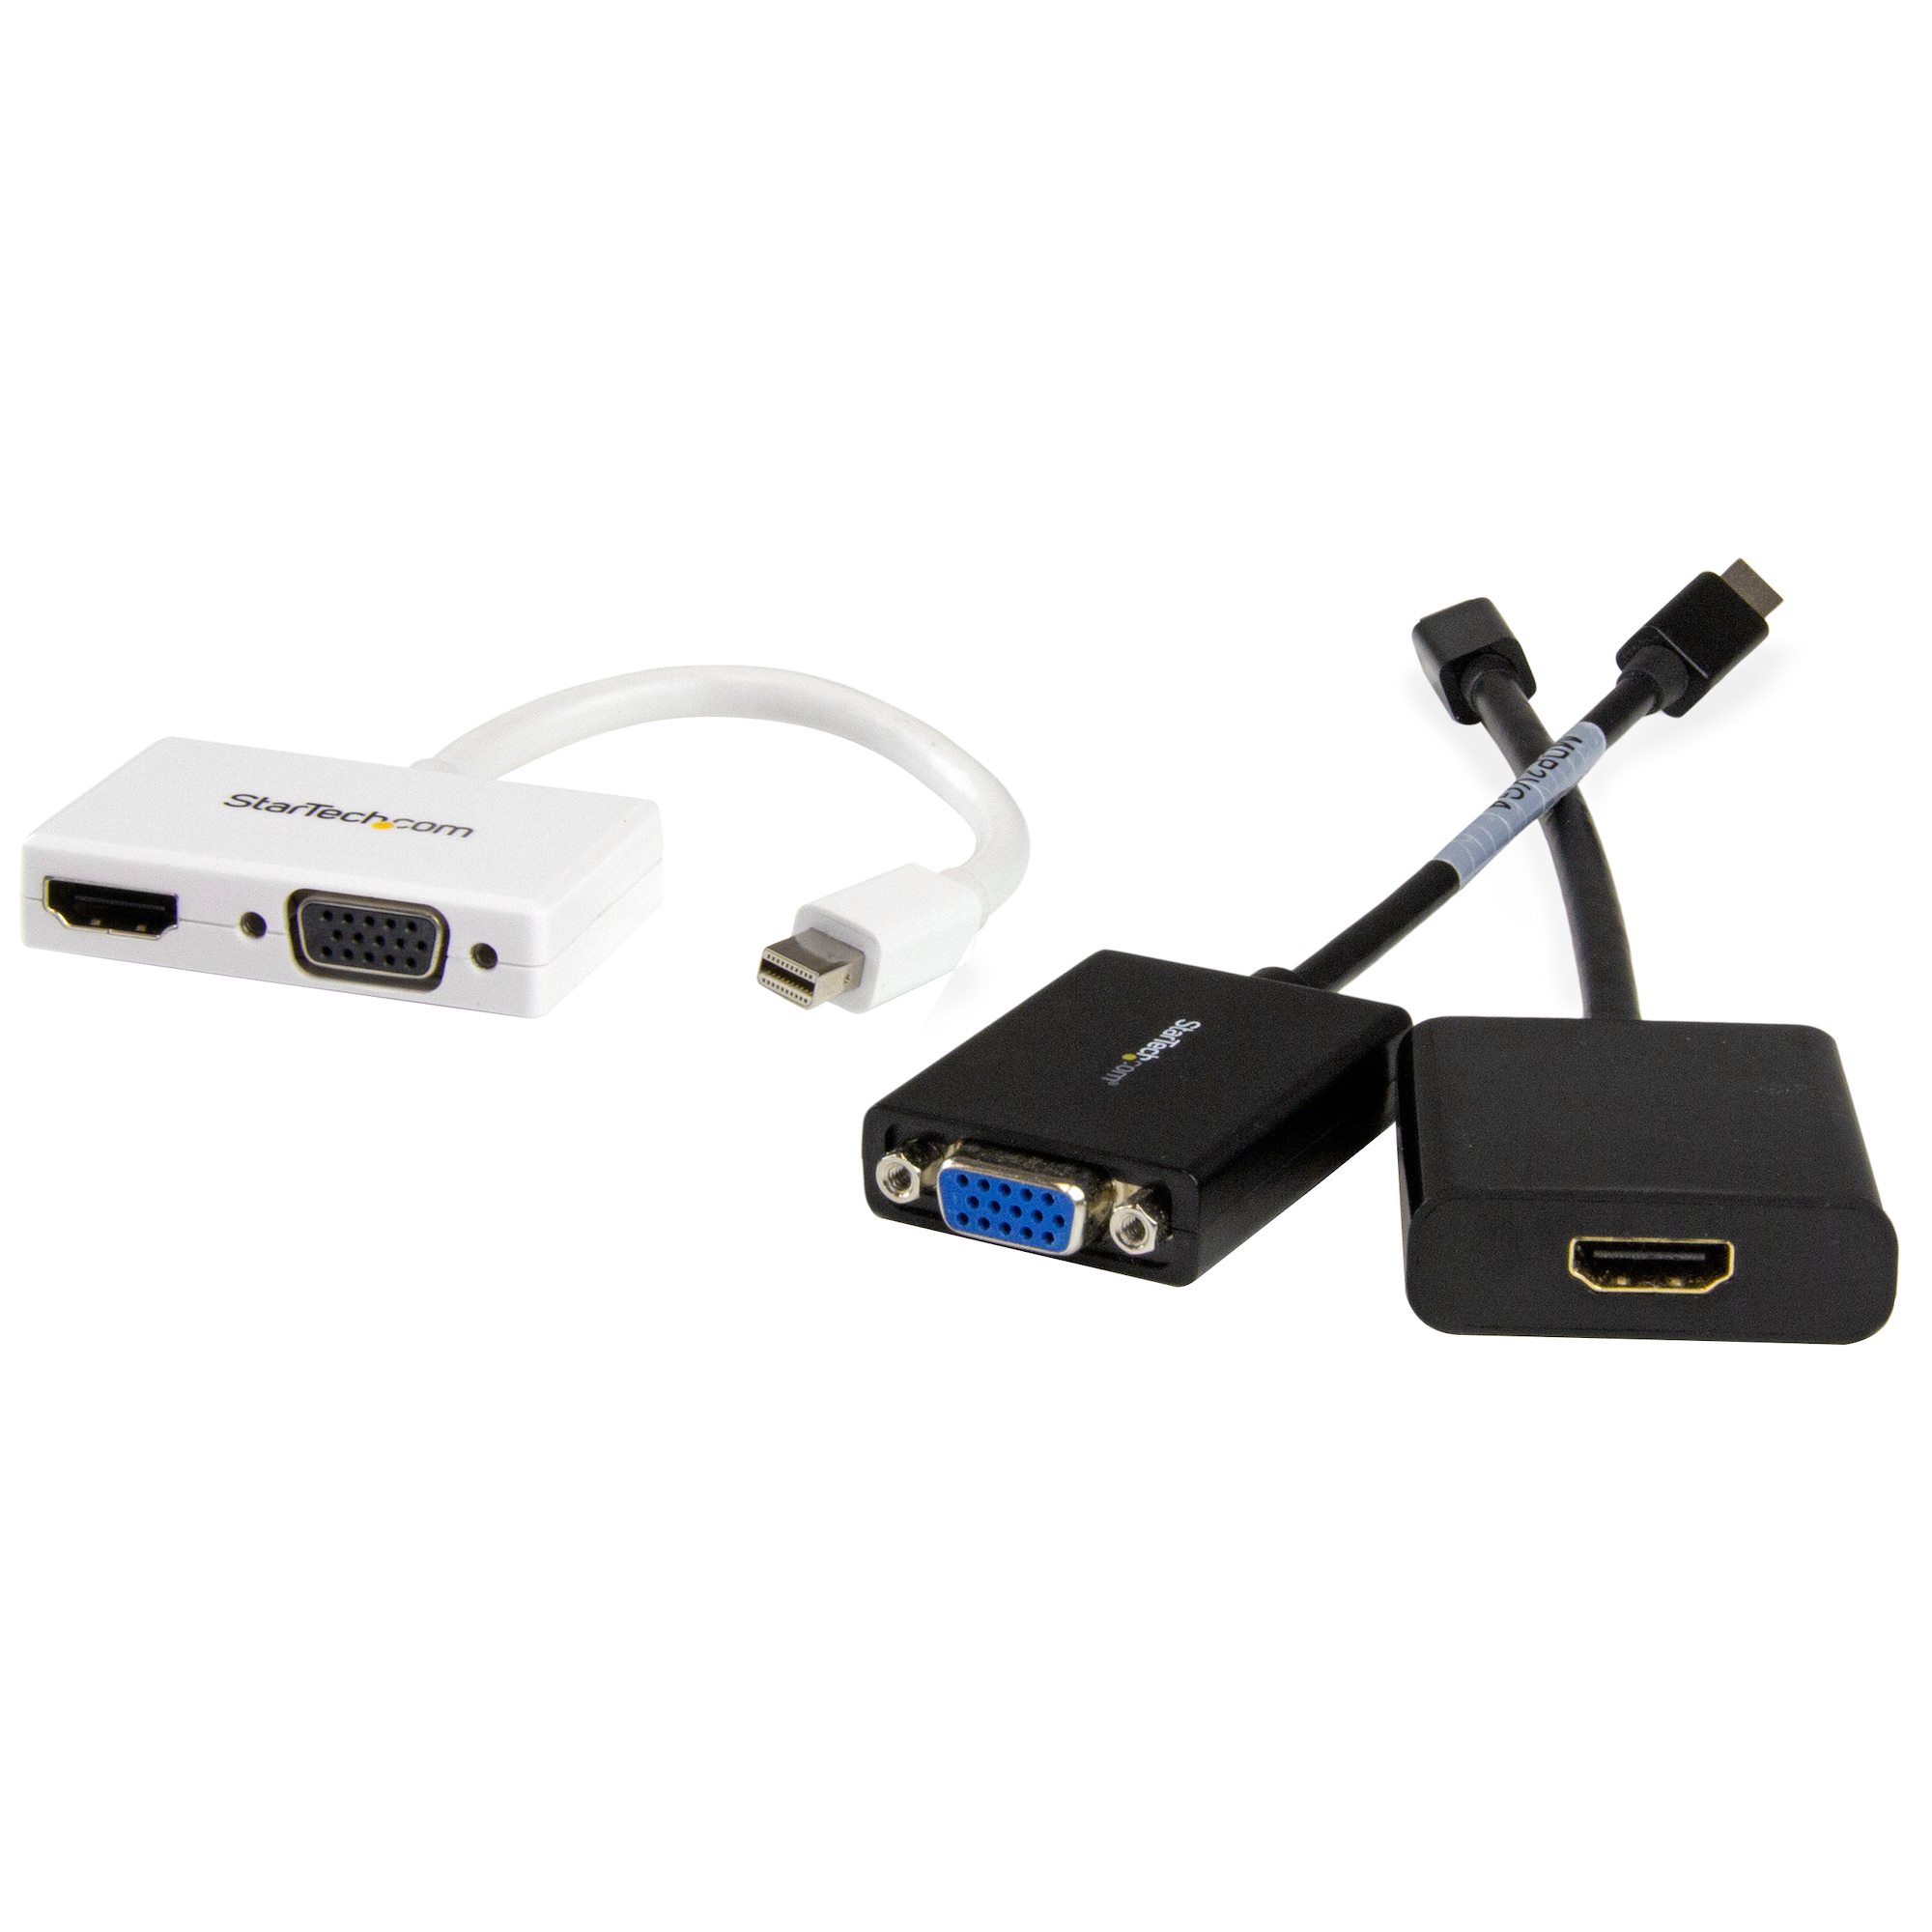 1266円 休日限定 StarTech.com Mini DisplayPort - DVI HDMI変換アダプタ ミニディスプレイポート接続3イン1アダプタ MDP2DPDVHD